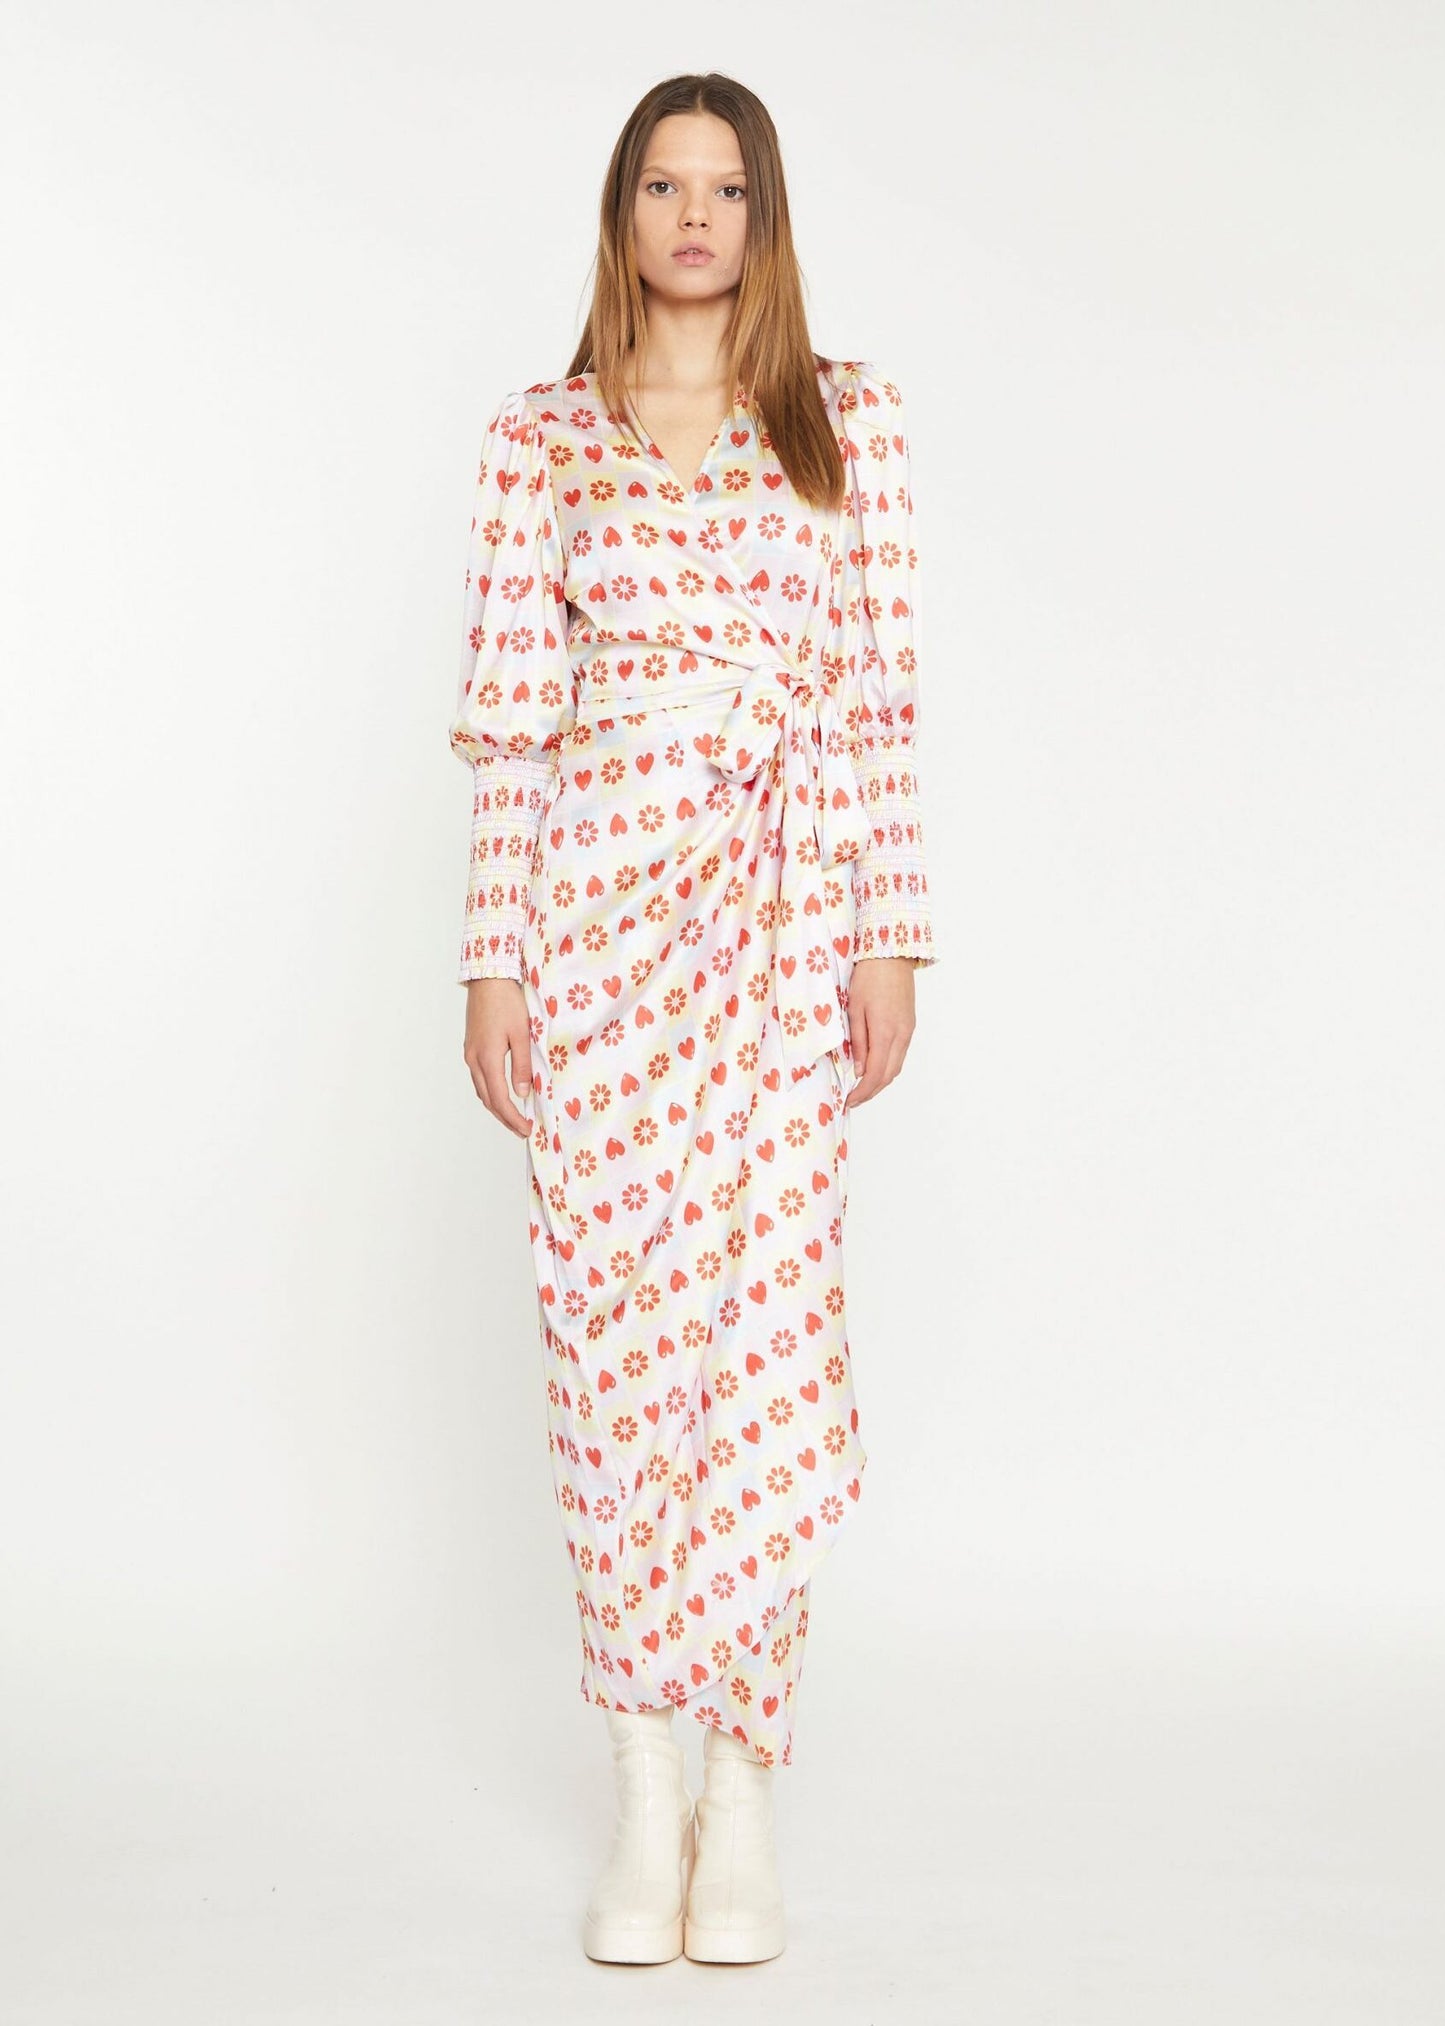 Glamorous - Pastel Tile Print Wrap Dress